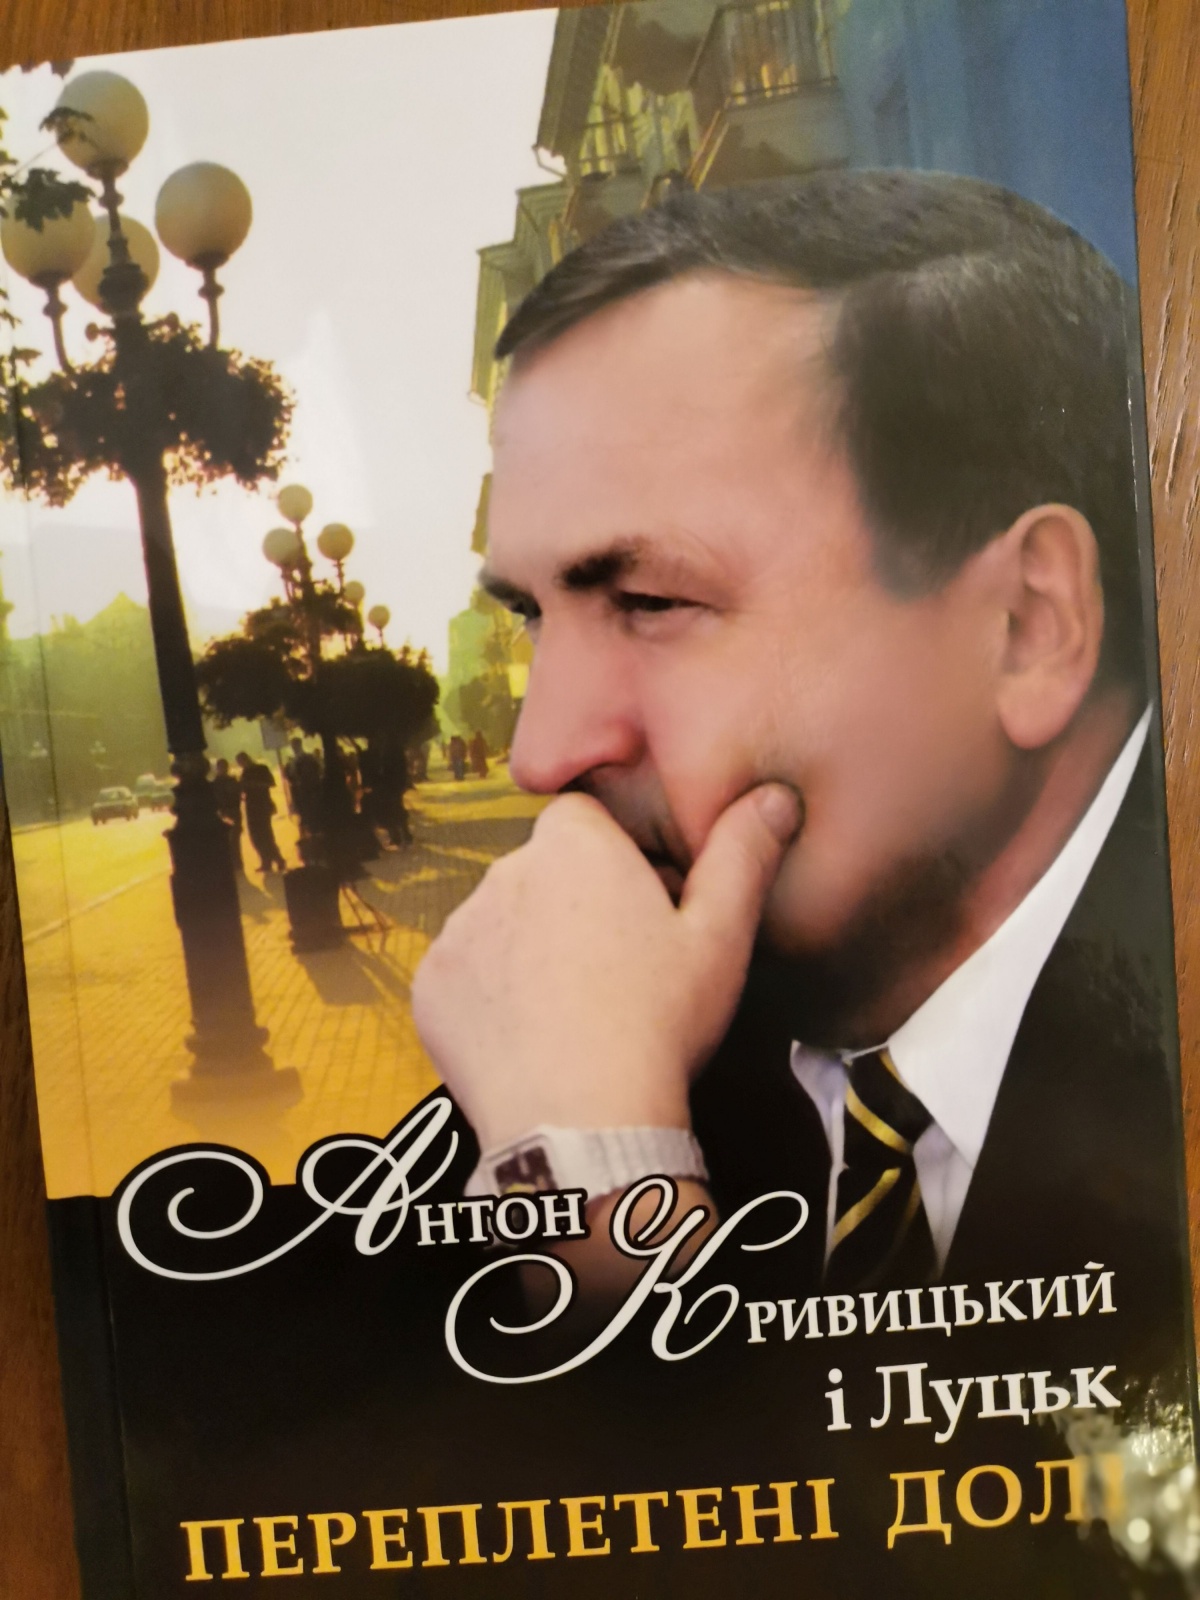 У Луцьку презентували книгу про колишнього міського голову